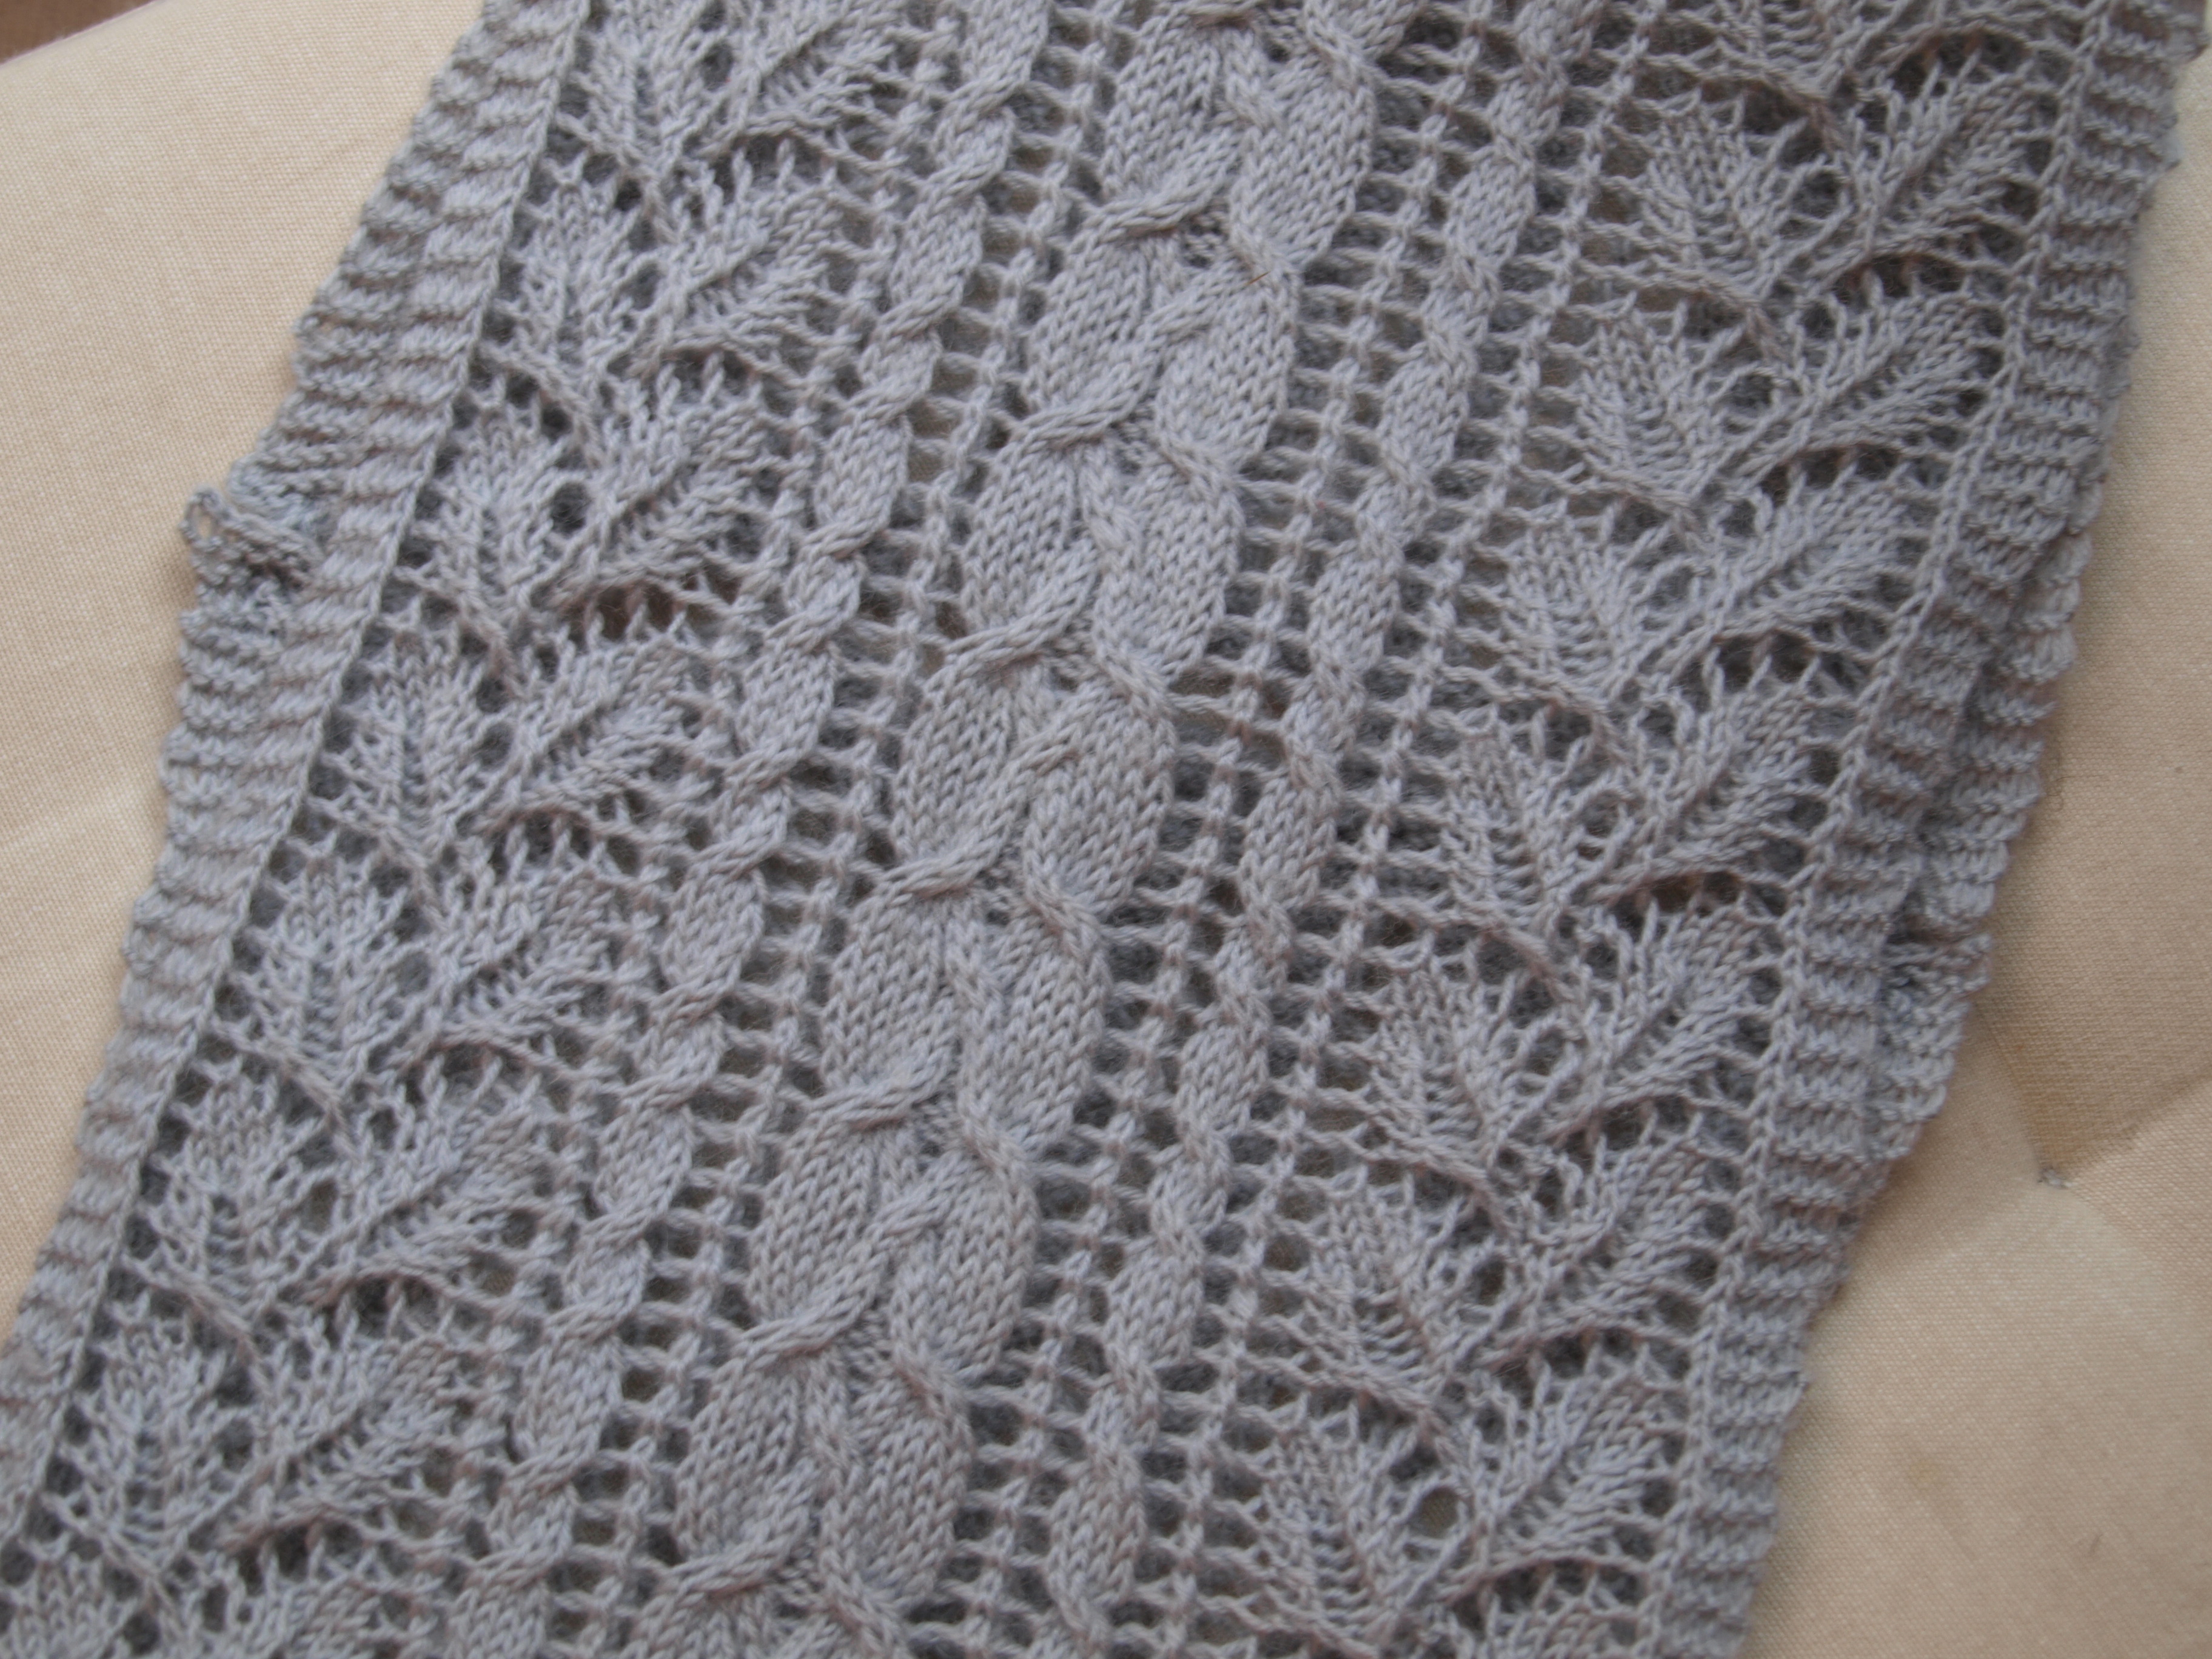 Knitting Patterns Tutorial Tutorial Reading Your Lace Knitting 1 Horseshoe Lace Knitting